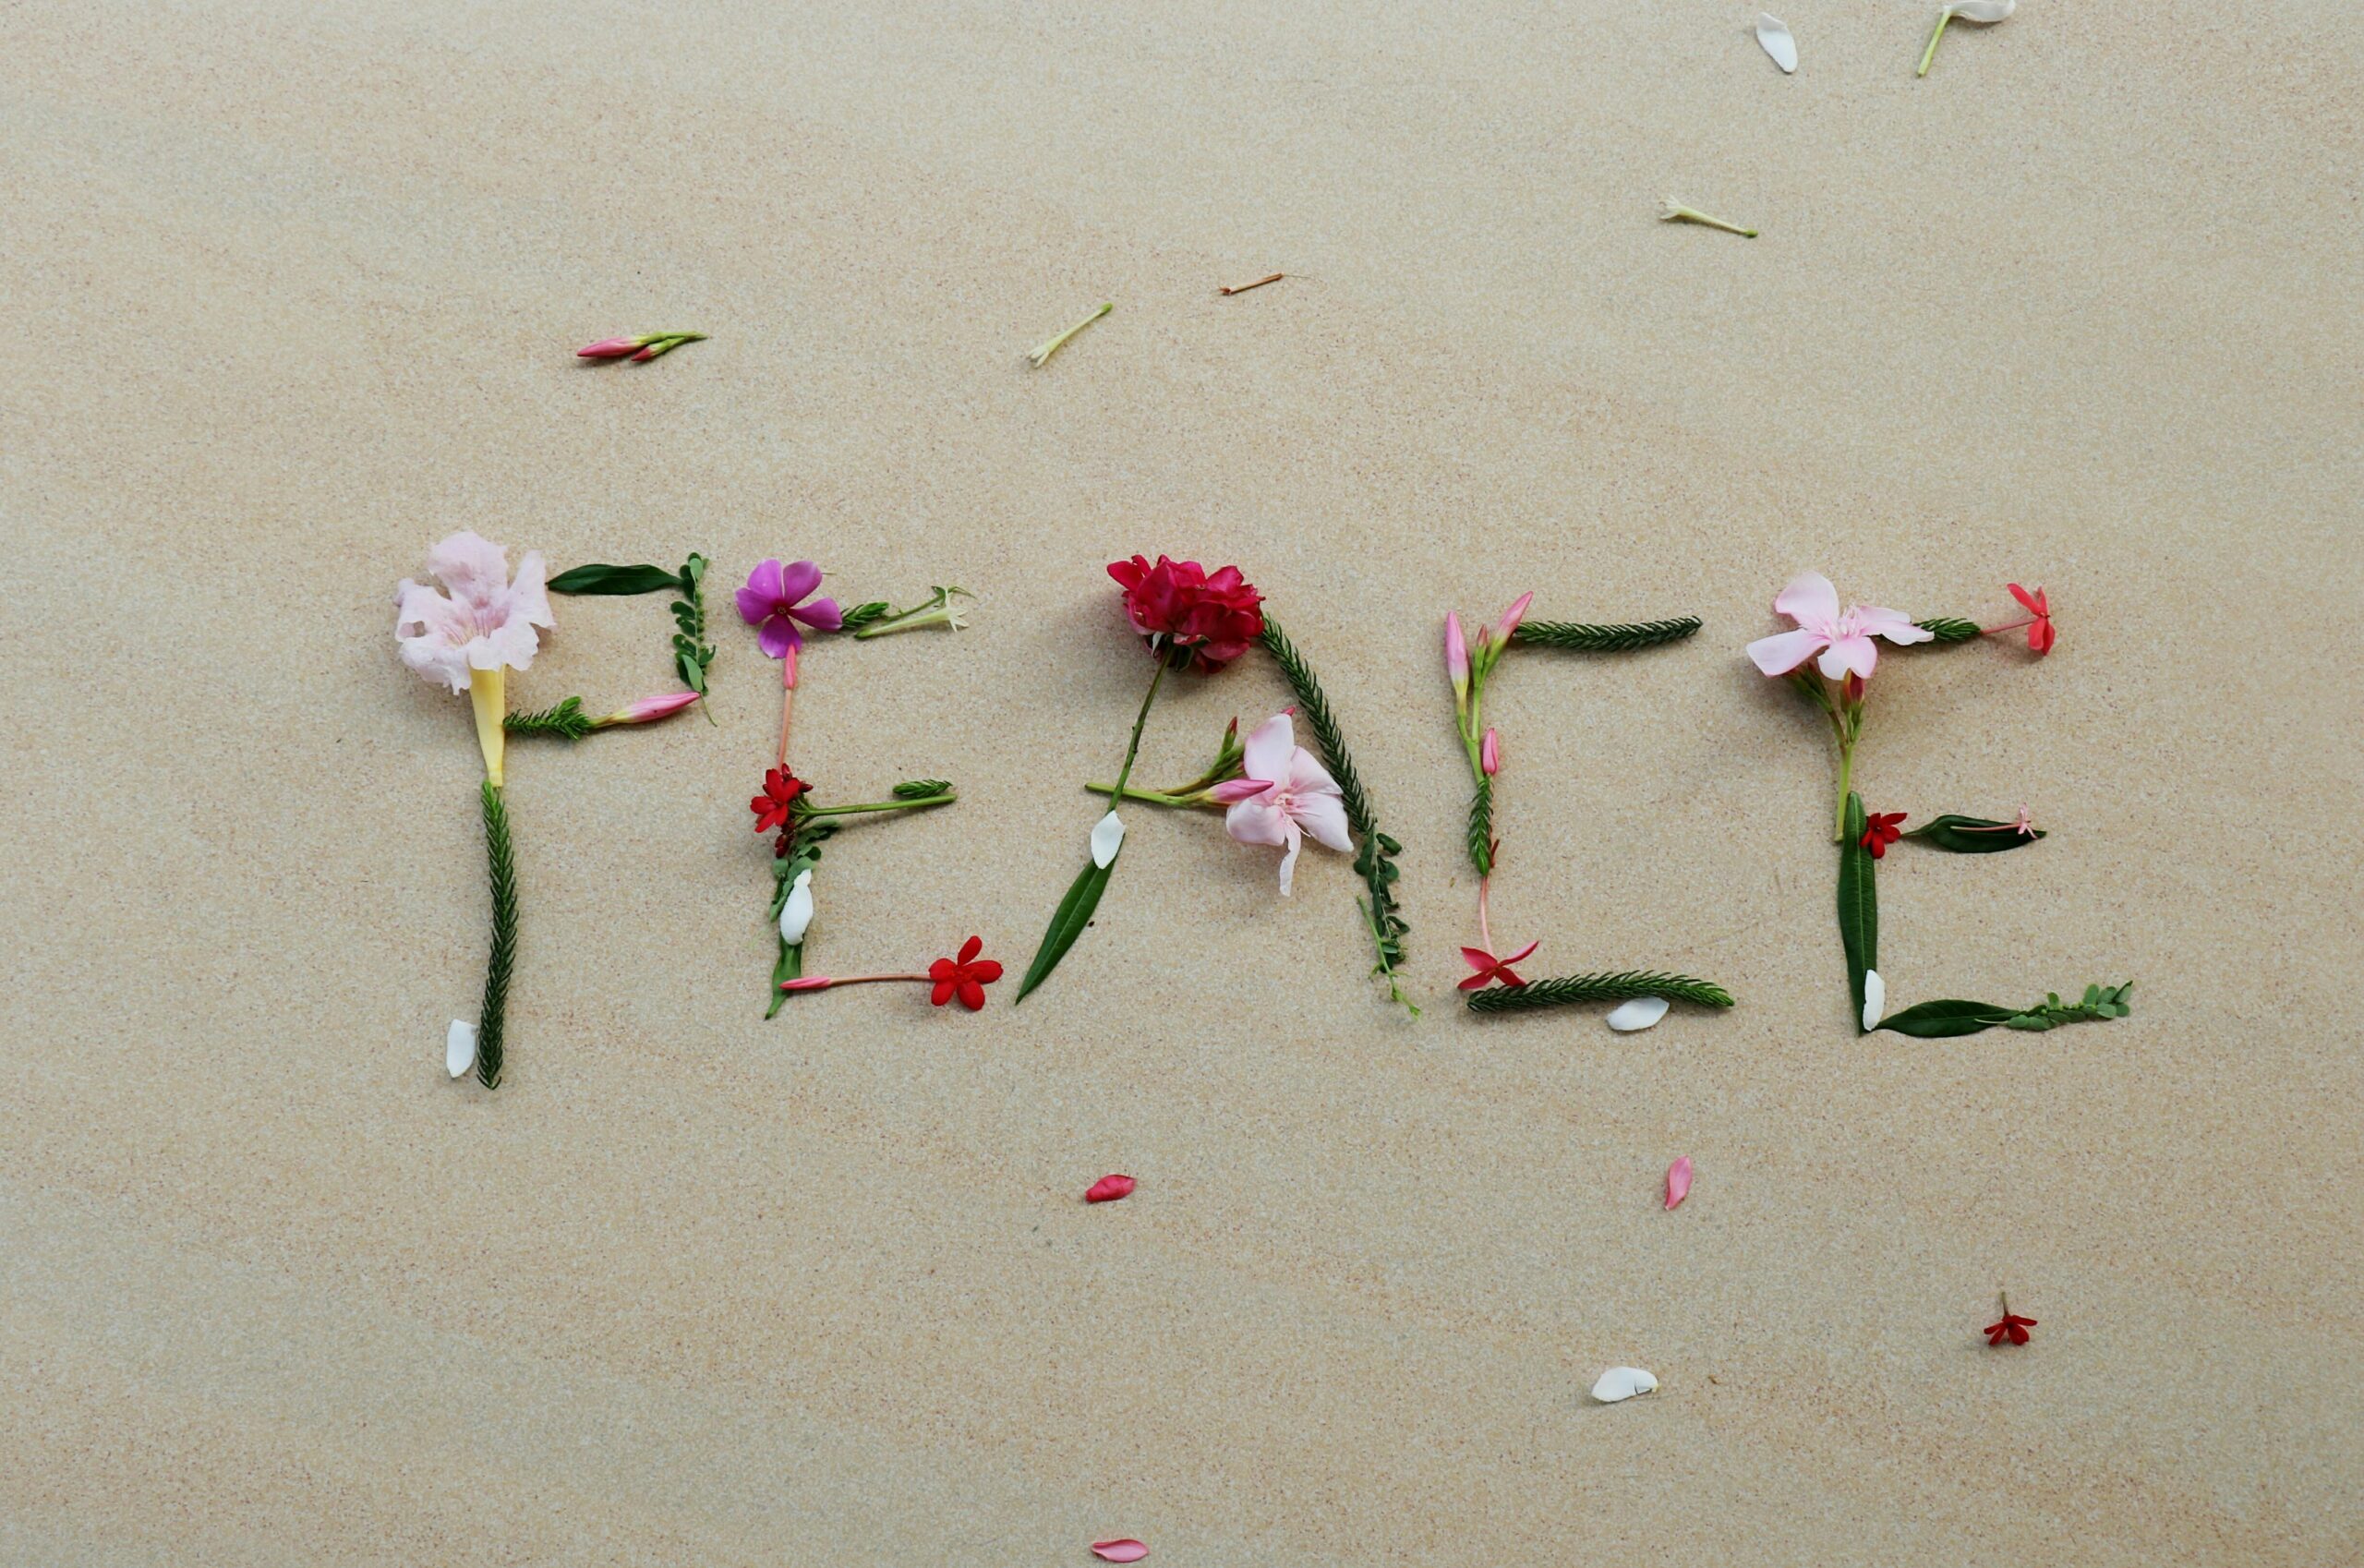 Word written in flowers, "Peace"